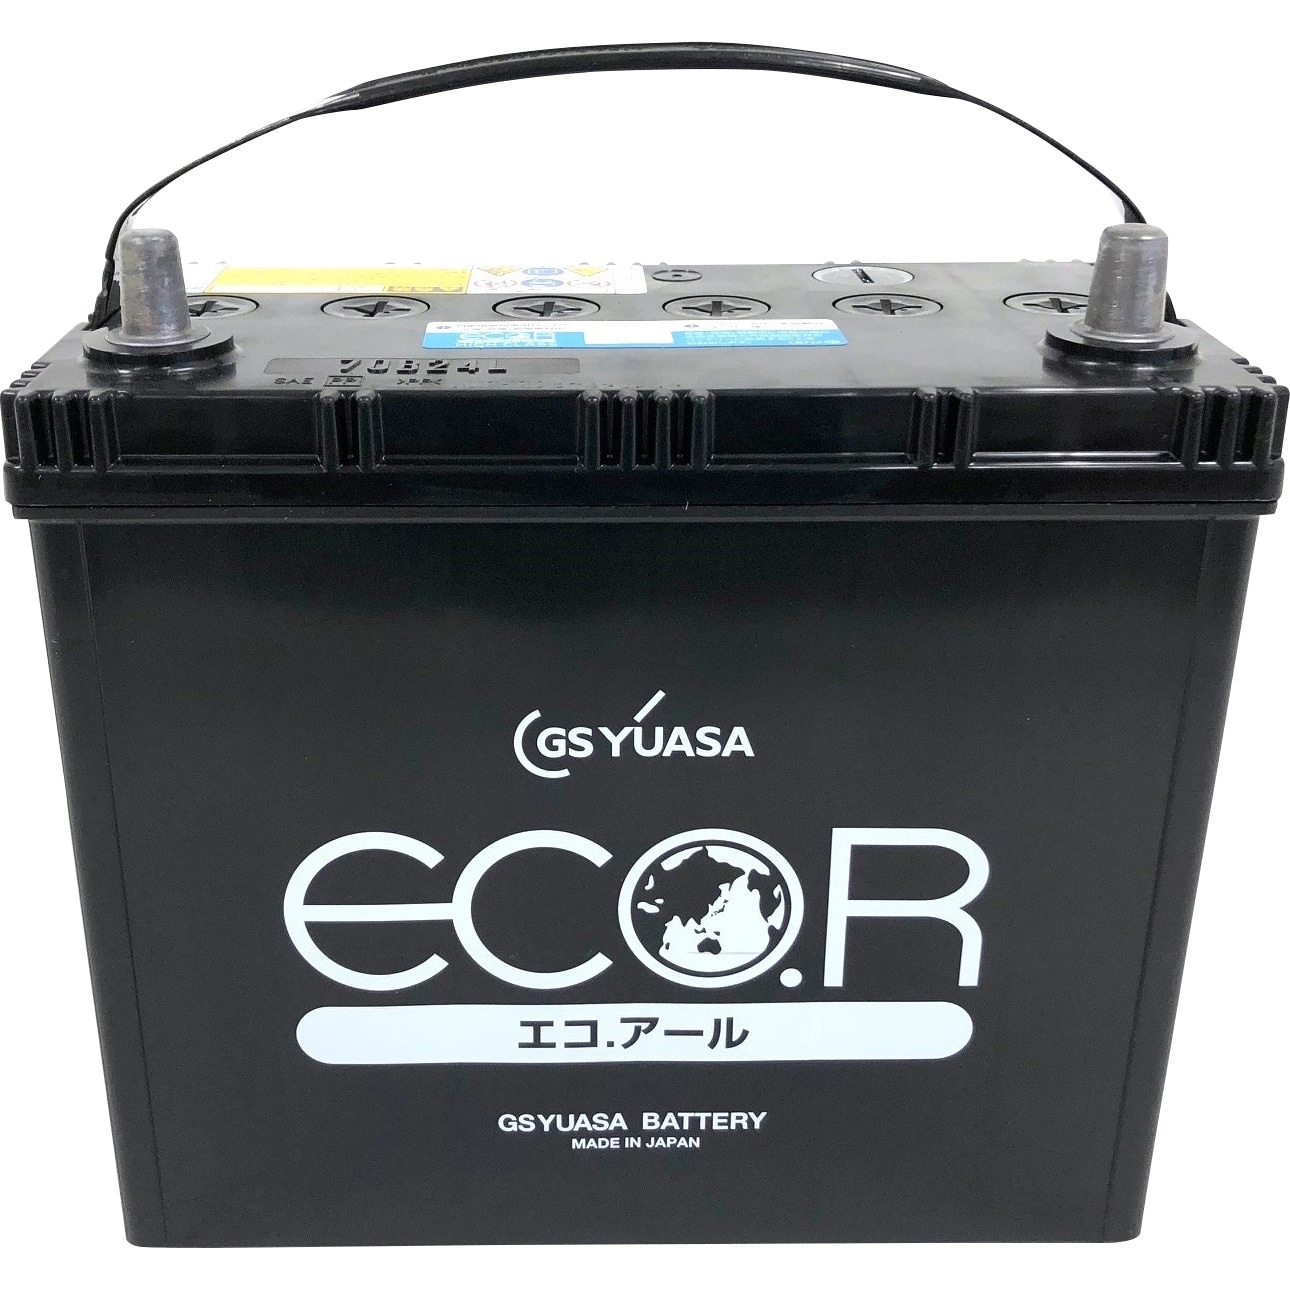 GSユアサ アコードワゴン CM3 カーバッテリー GSユアサ エコR ハイクラス EC-70B24L GS YUASA ECO.R HIGH CLASS ECOR ACCORD WAGON 車用バッテリー